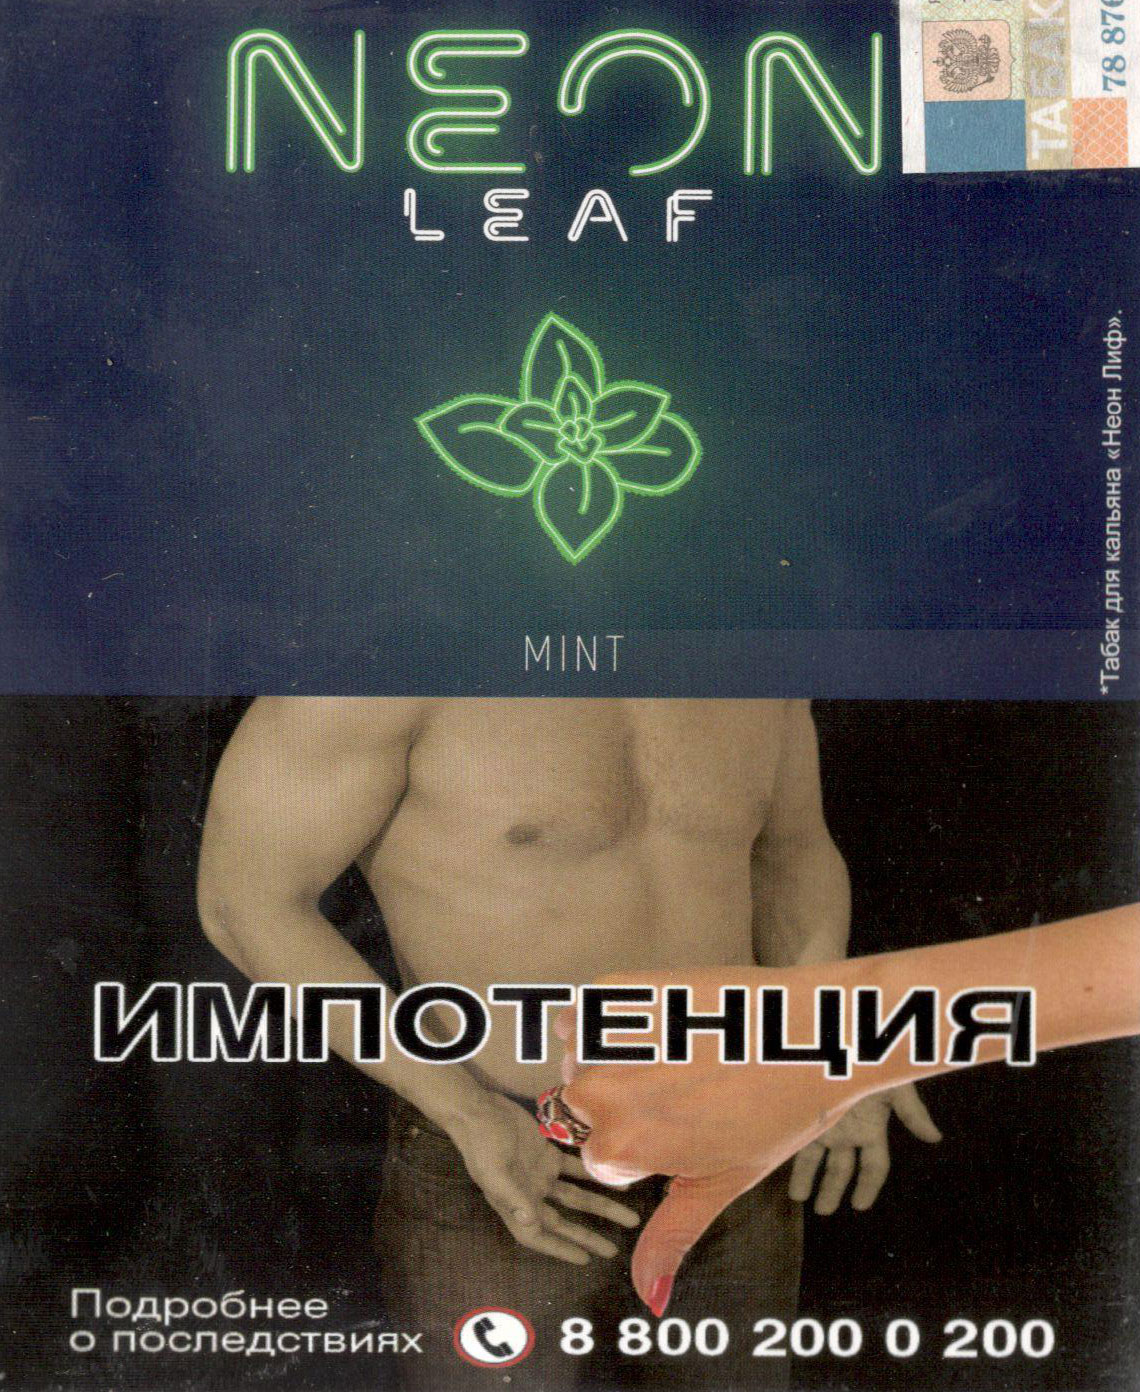 Табак Neon Leaf- Мята (Mint) фото